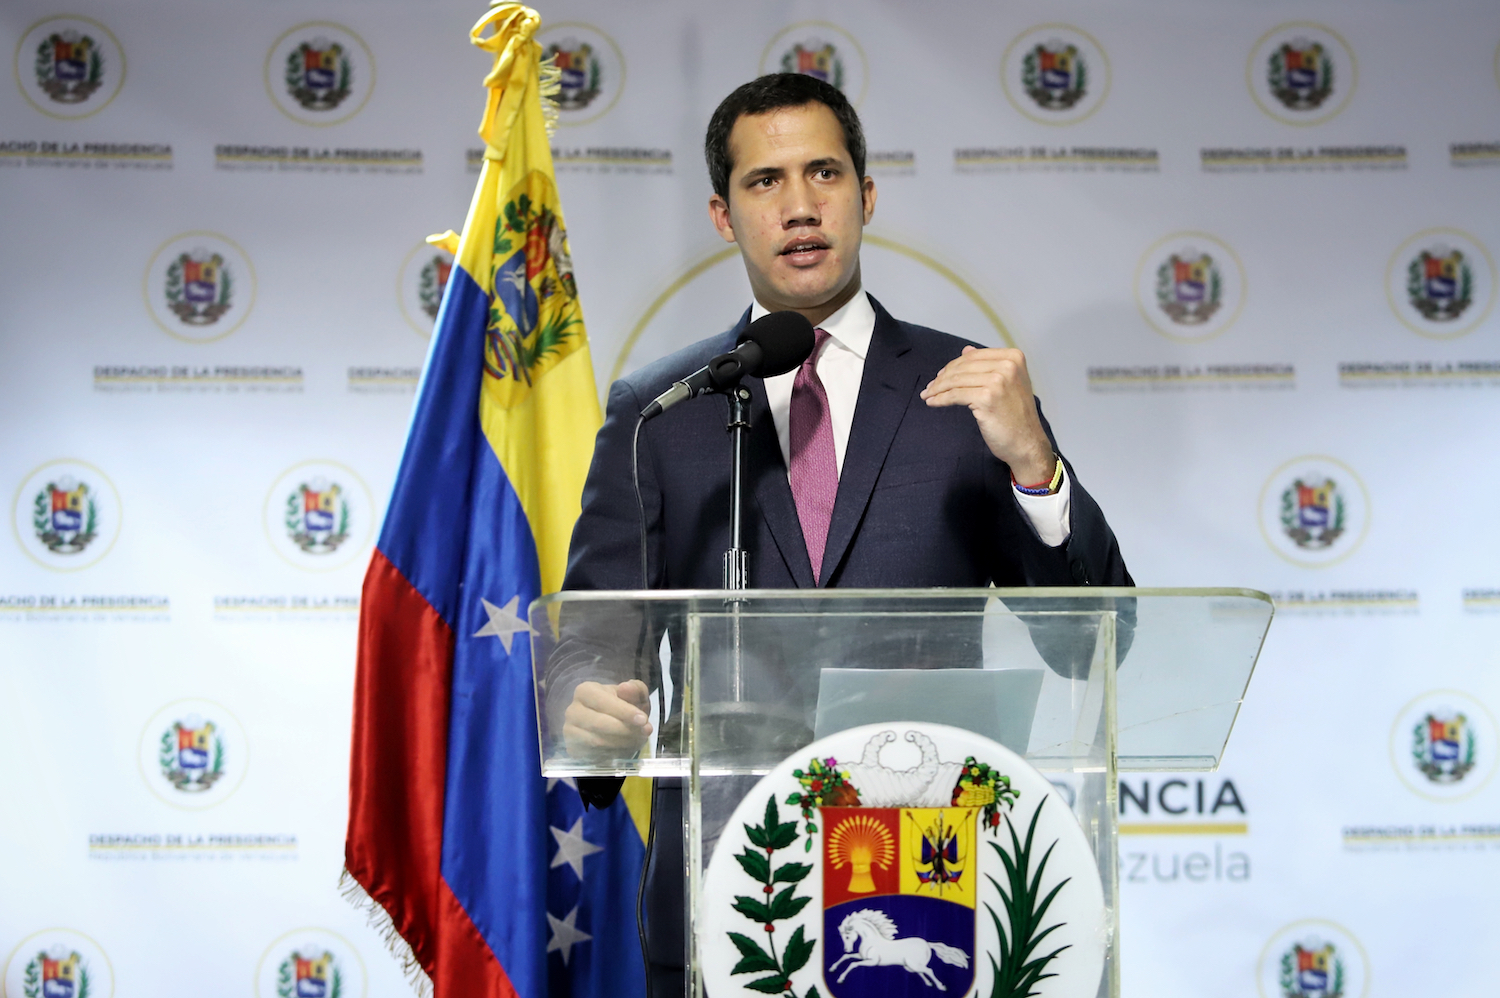 Alemania ratifica su apoyo a Juan Guaidó para lograr una Venezuela libre y democrática